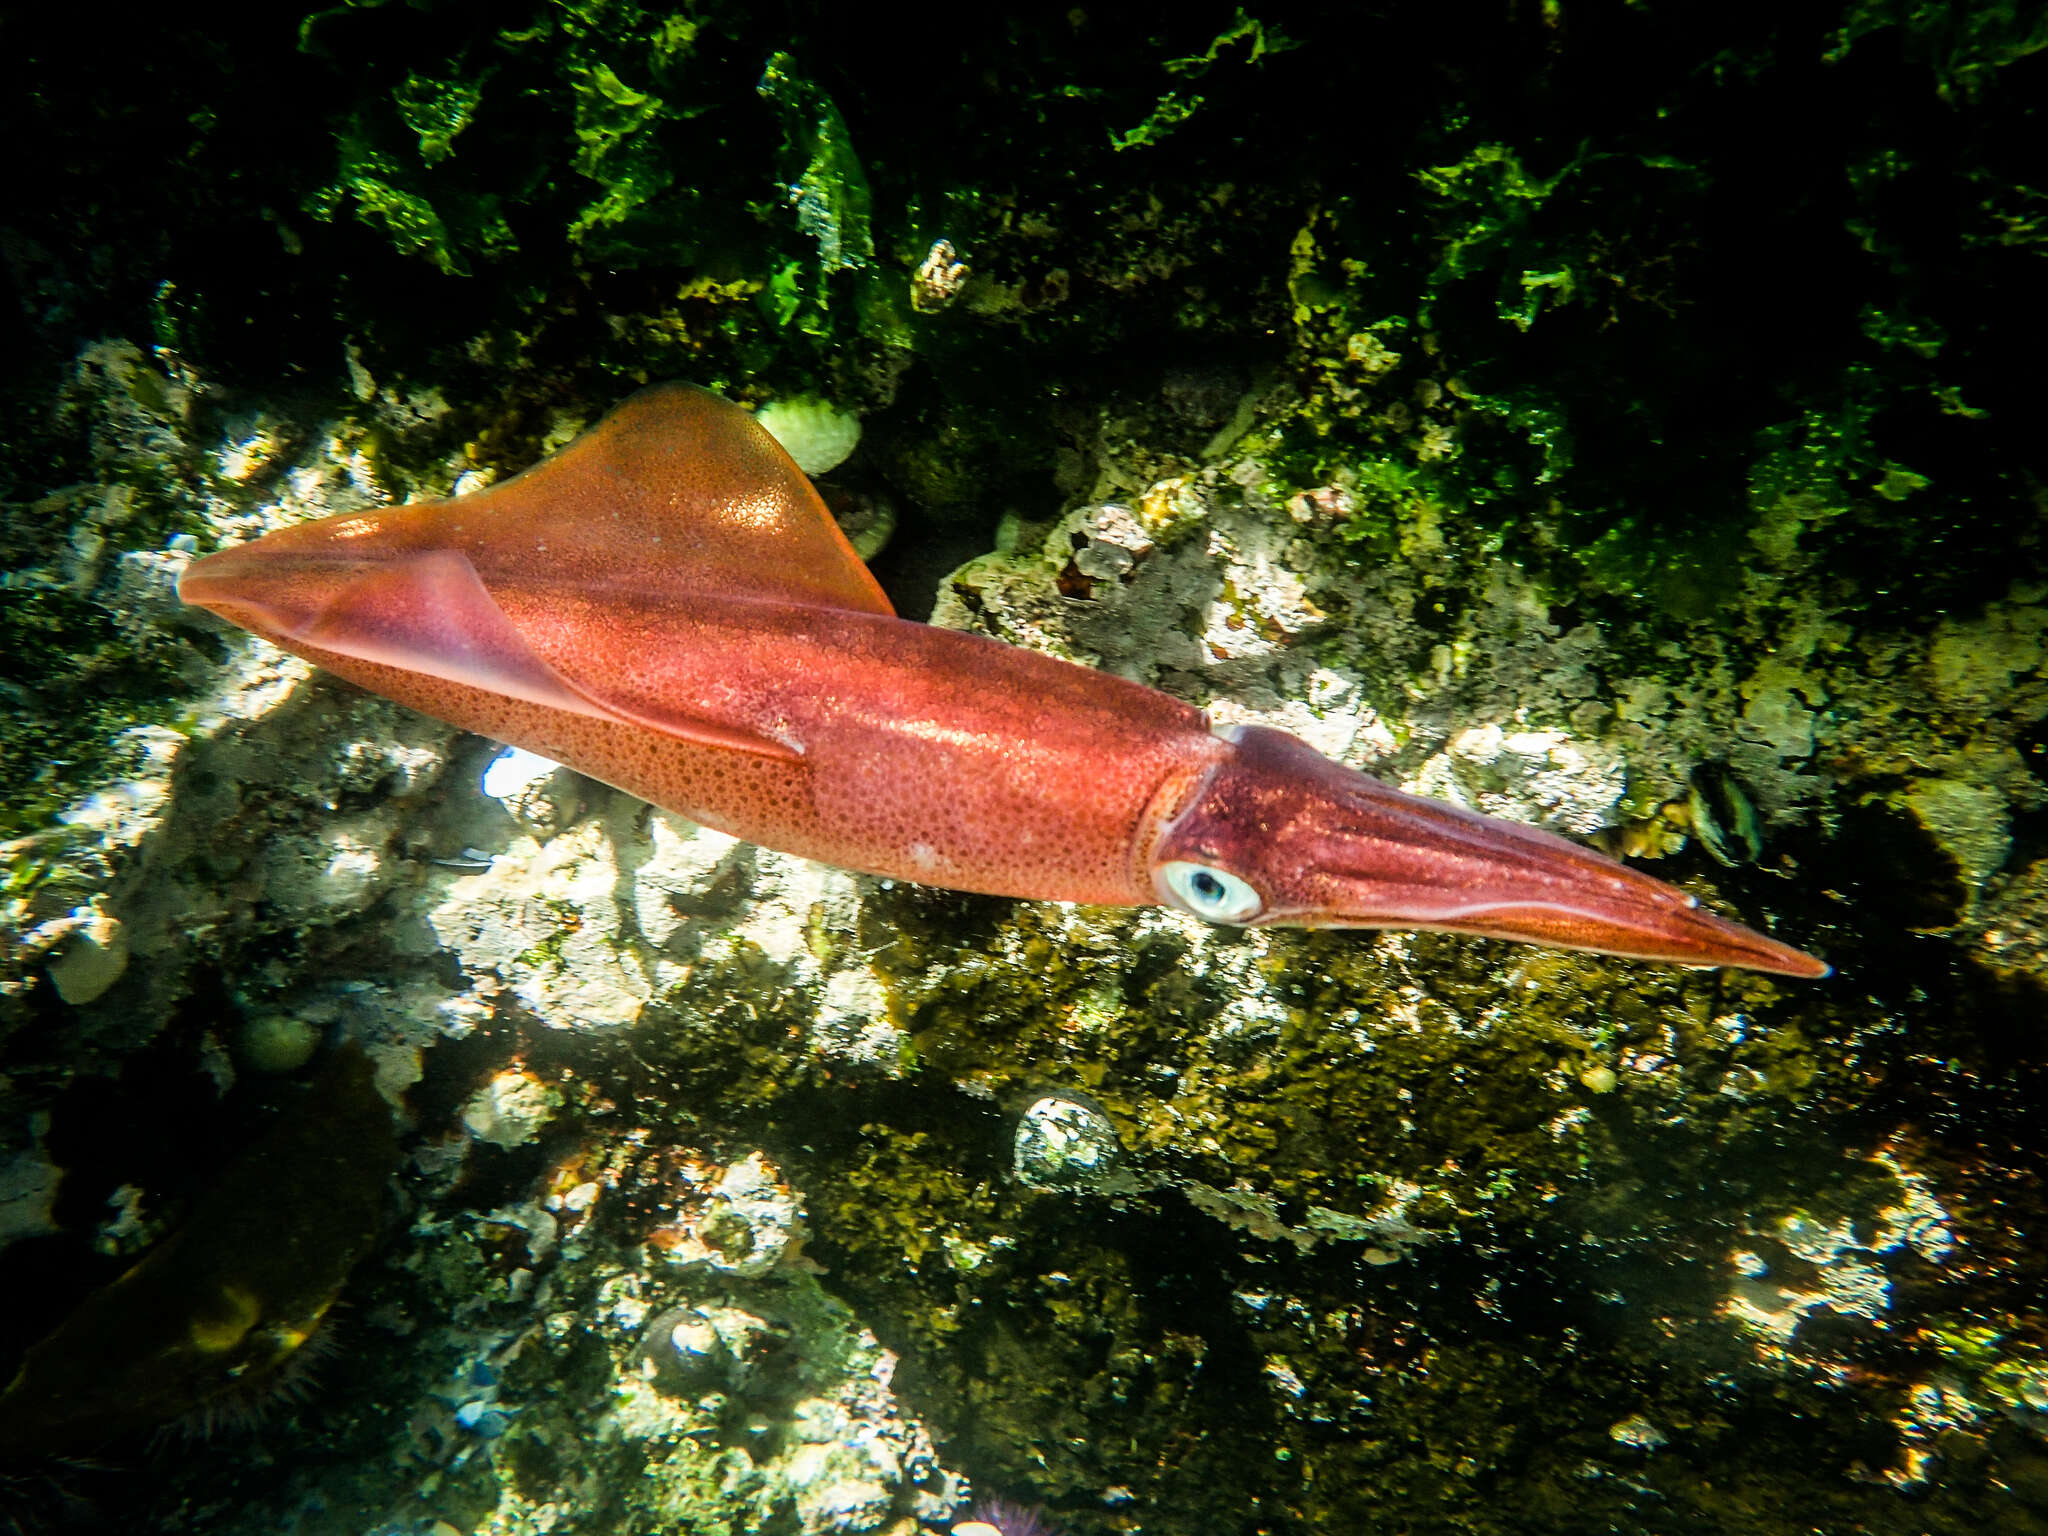 Image of Cape Hope squid